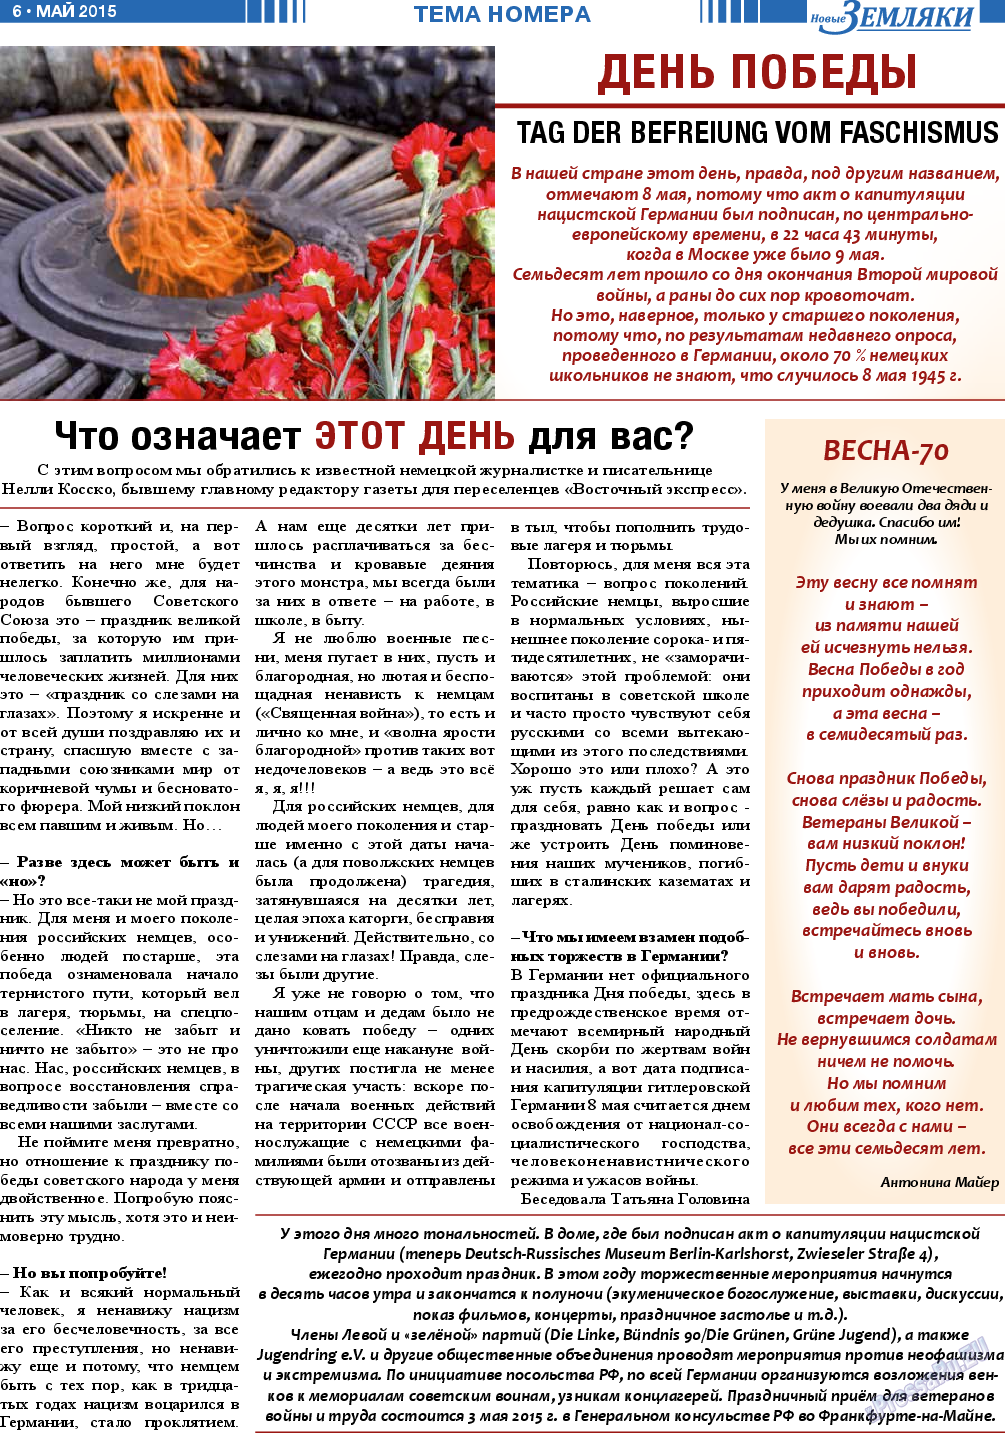 Новые Земляки, газета. 2015 №5 стр.6